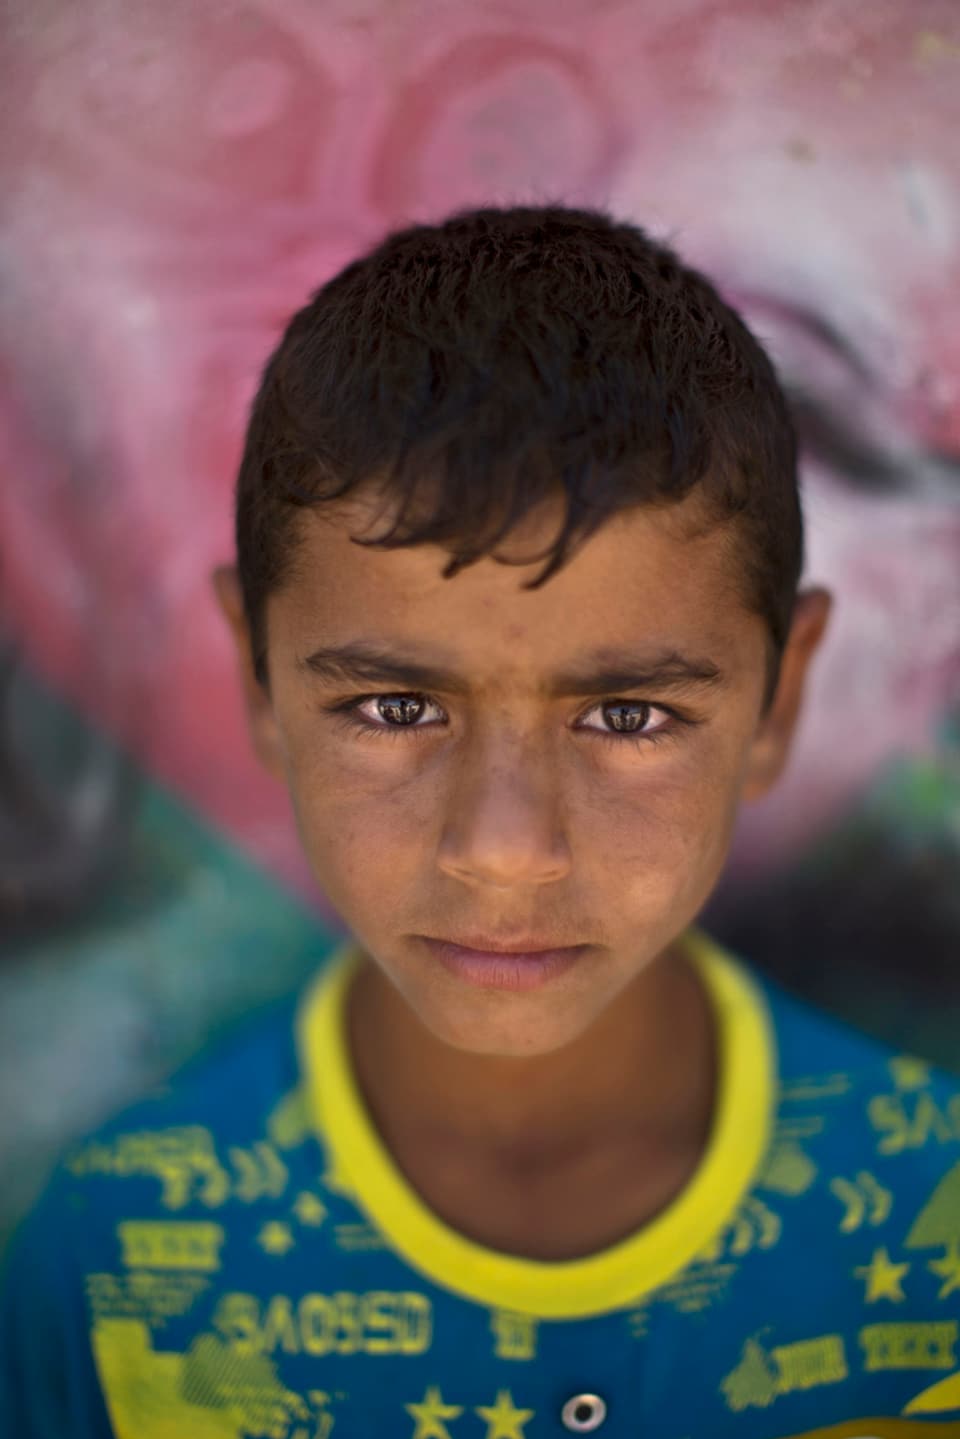 Porträt eines syrischen Buben